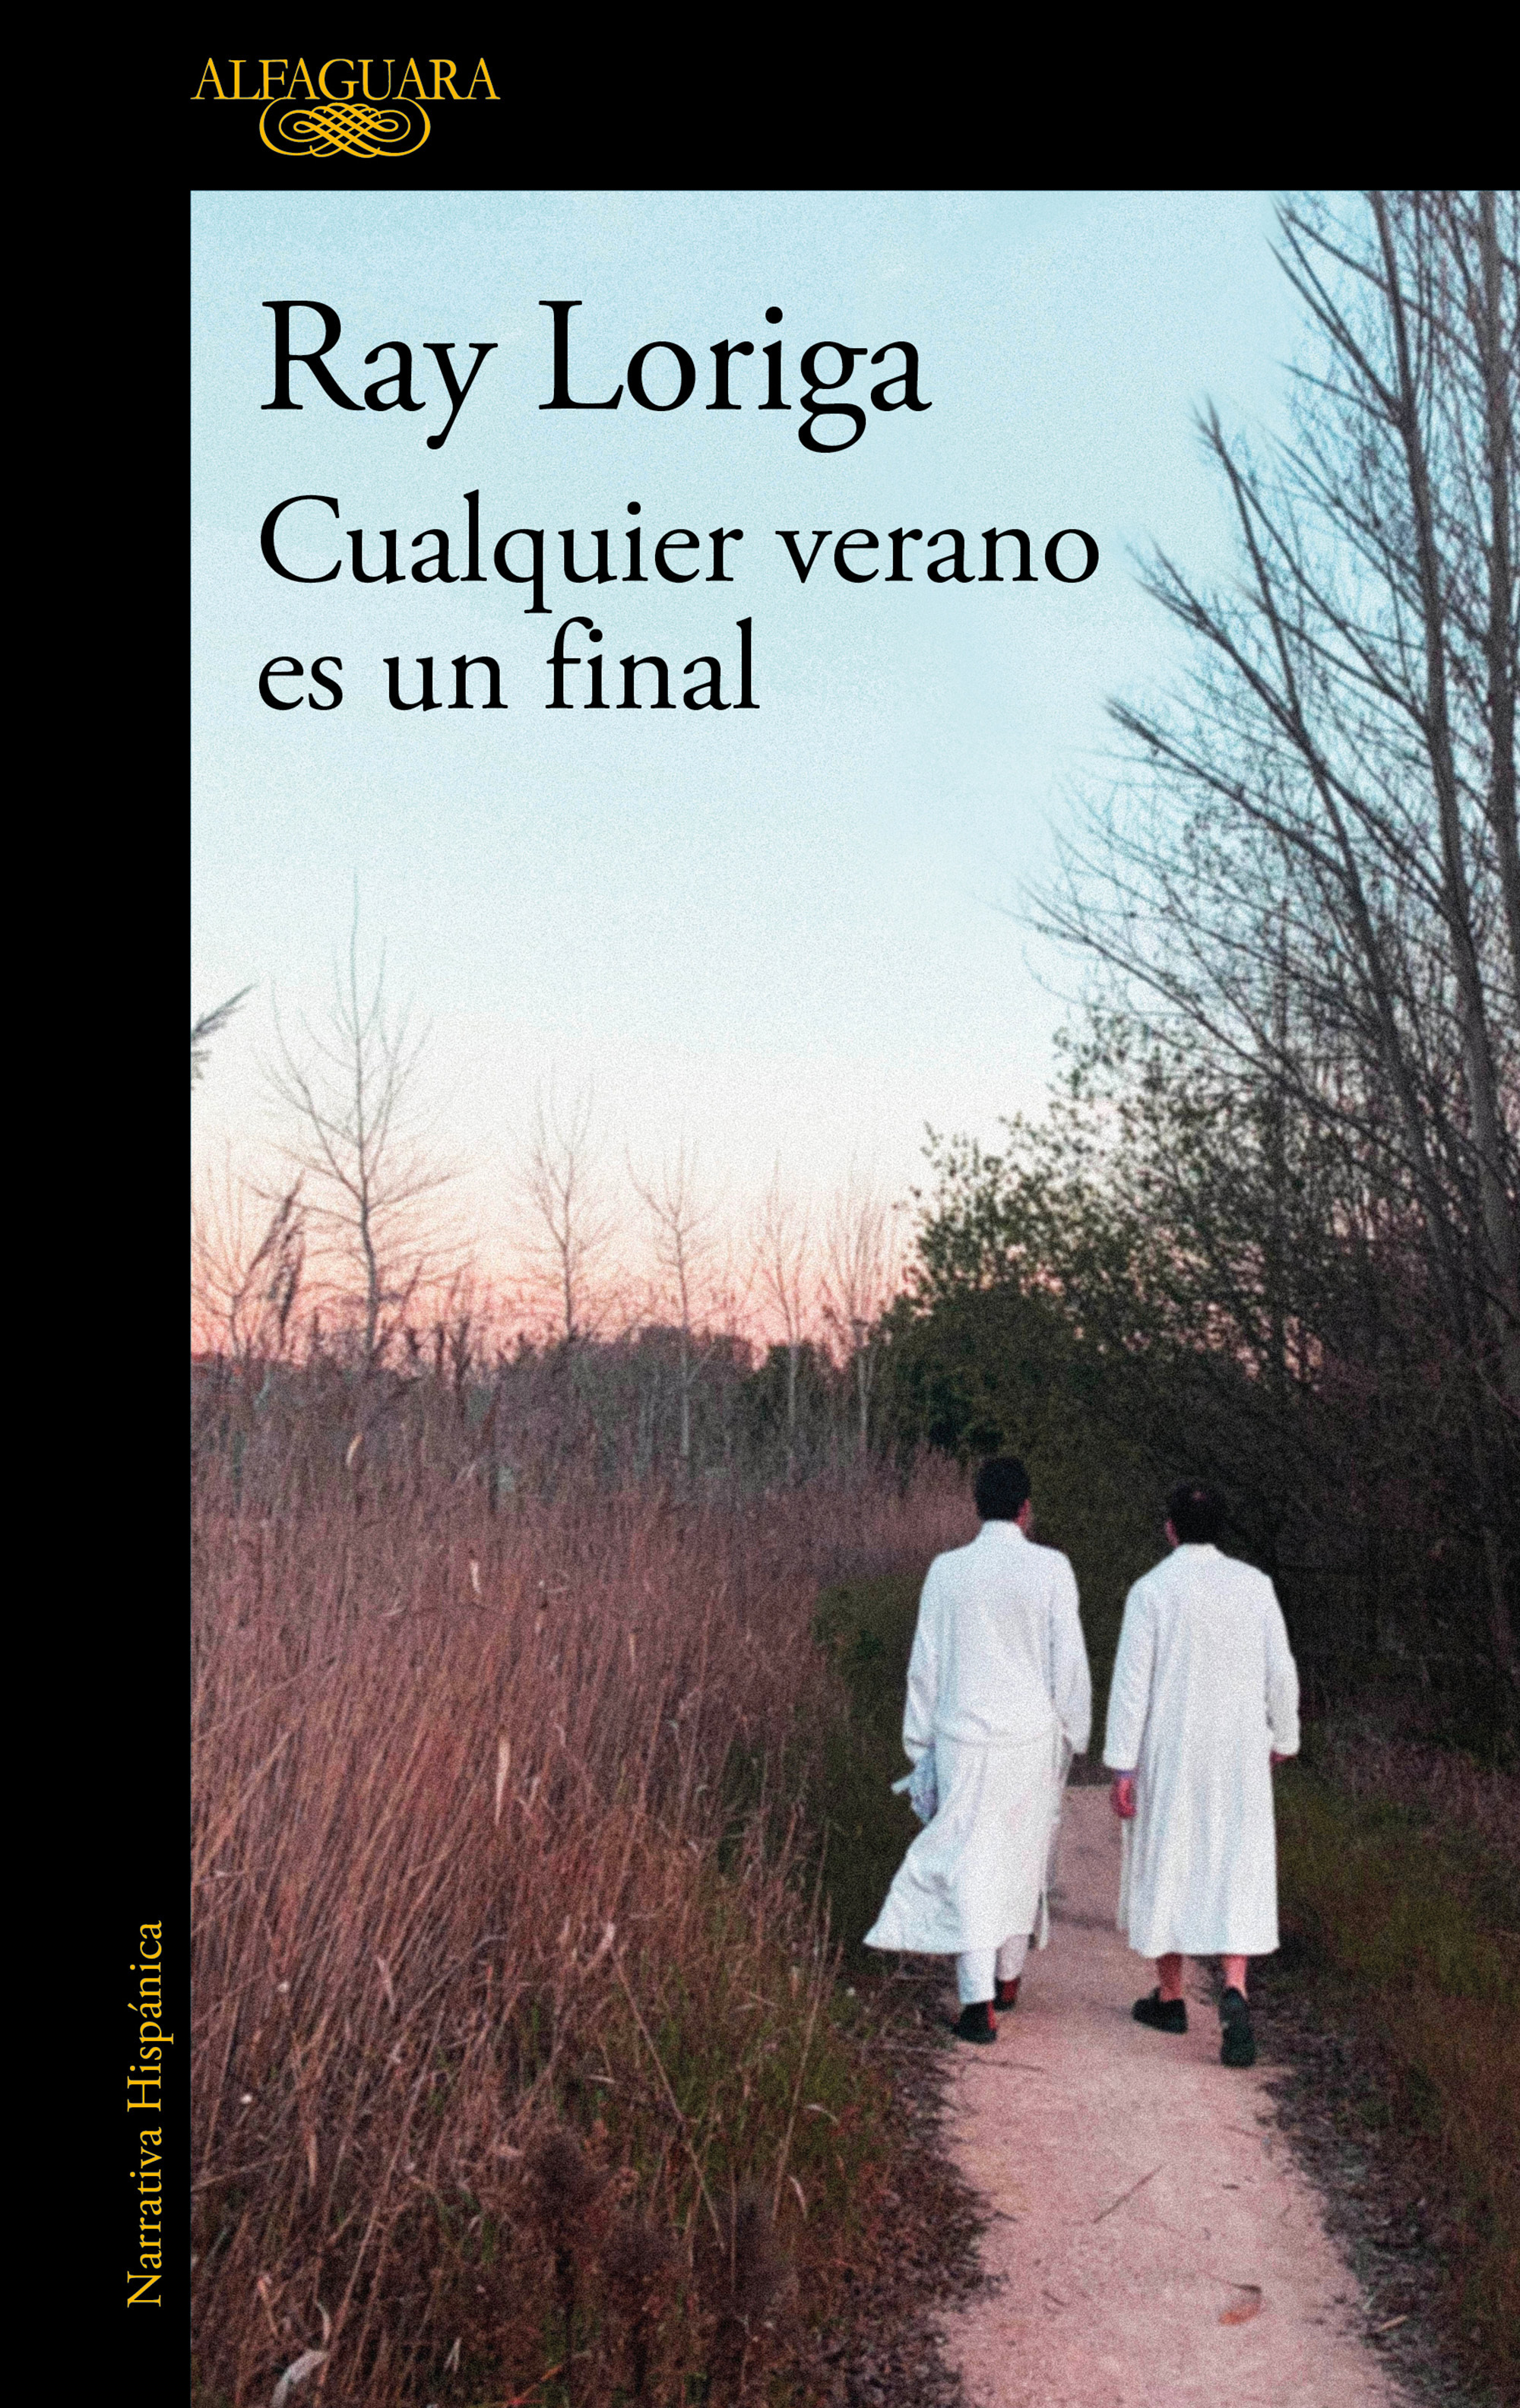 Portada del recientemente publicado "Cualquier verano es un final" (Ed. Alfaguara) con portada de la artista Fátima de Burnay.